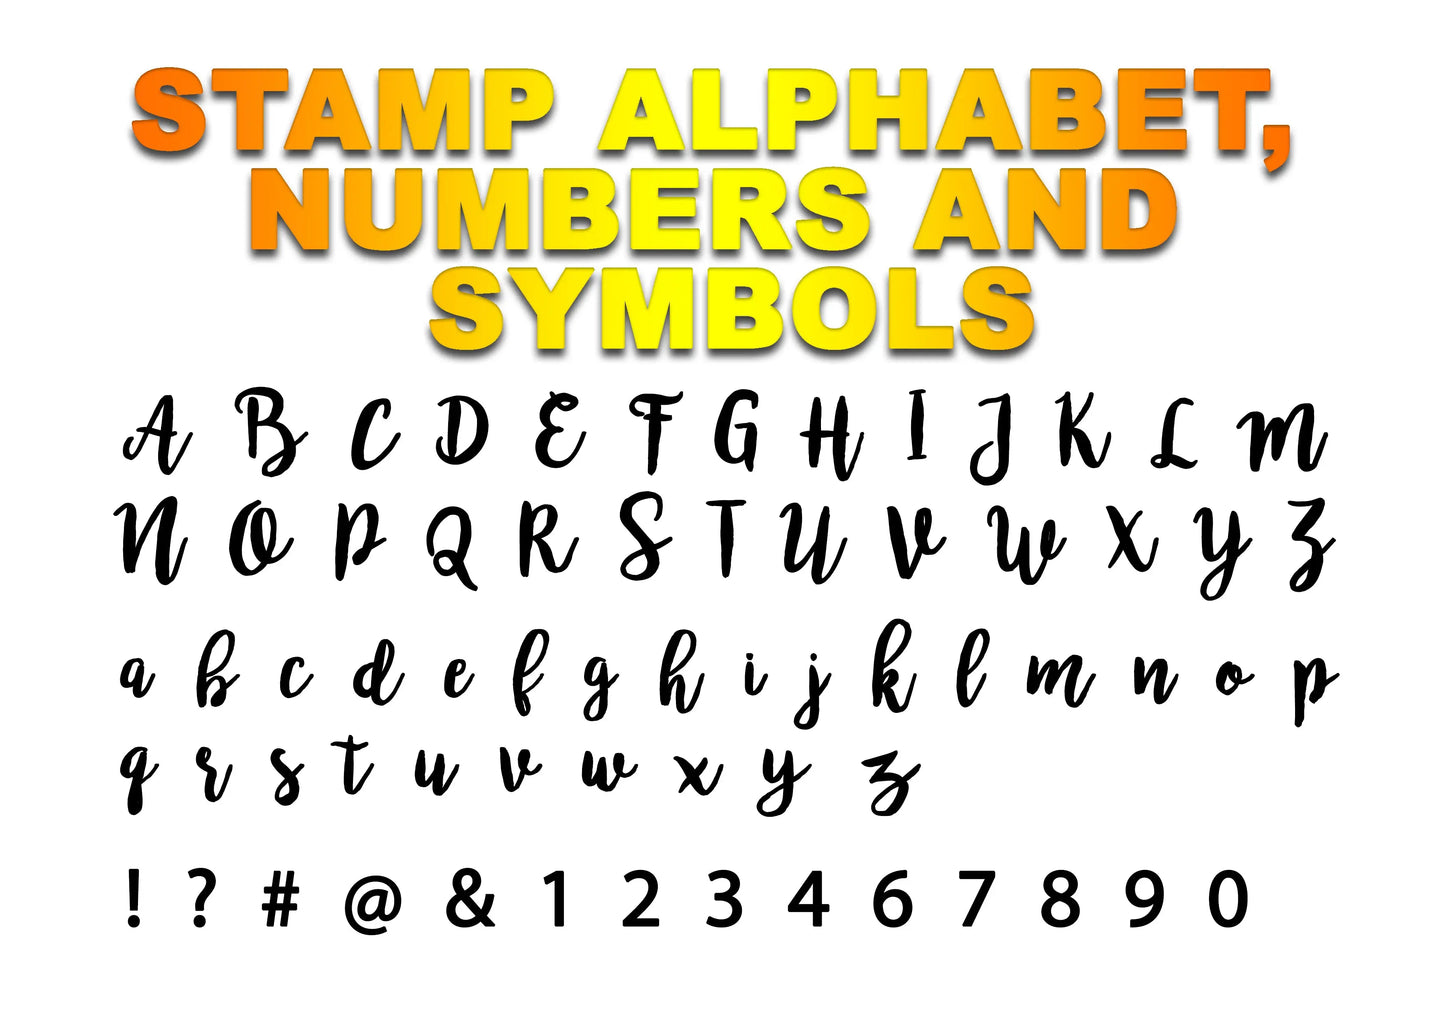 ‘EMILY 4’ BROMELLO Font full Alphabet Stamp - Fondant Embosser Cake MEG cookie cutters